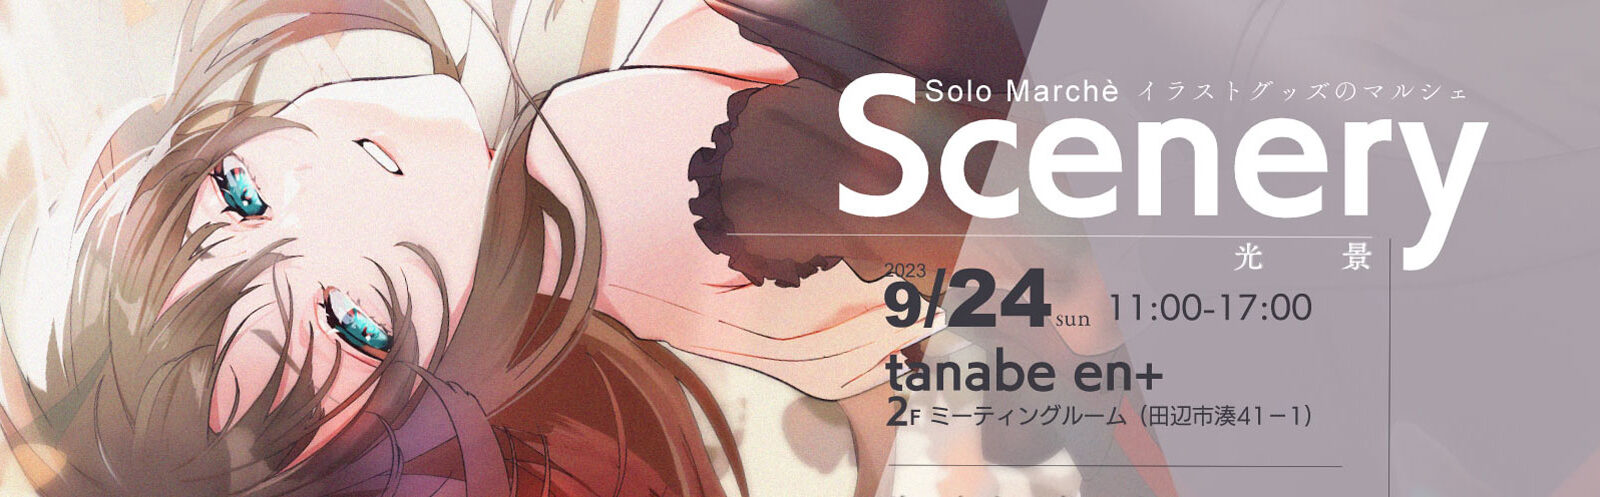 Solo Marchè 【Scenery -光景-】イラストグッズのマルシェとデジタルイラストのワークショップ